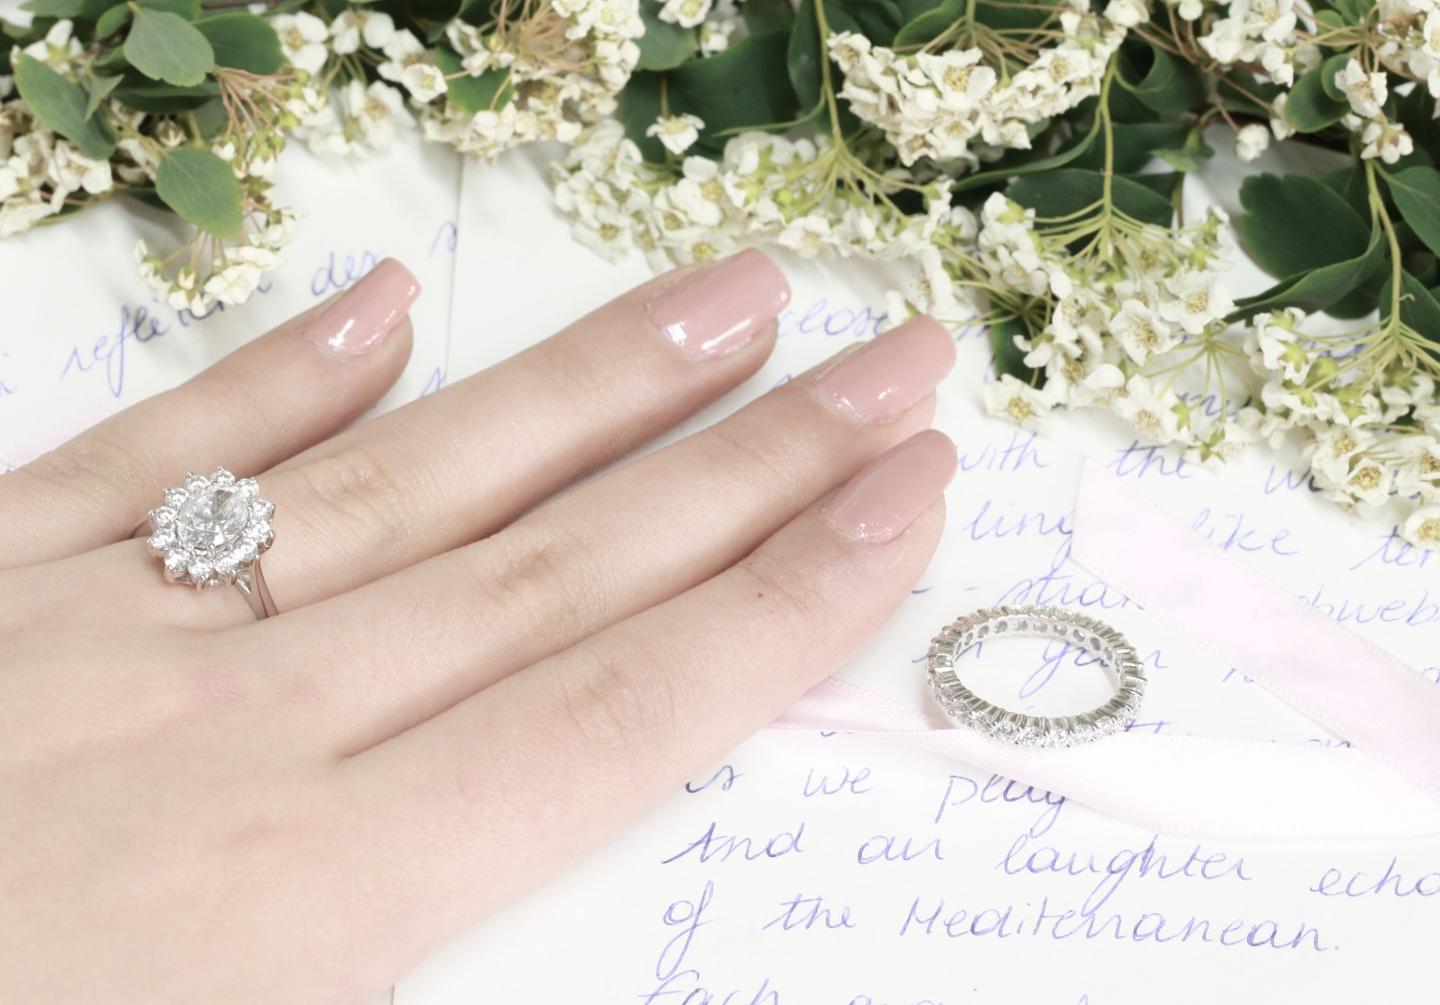 英国人从哪里获得婚礼主题和选购订婚戒指的灵感？ 